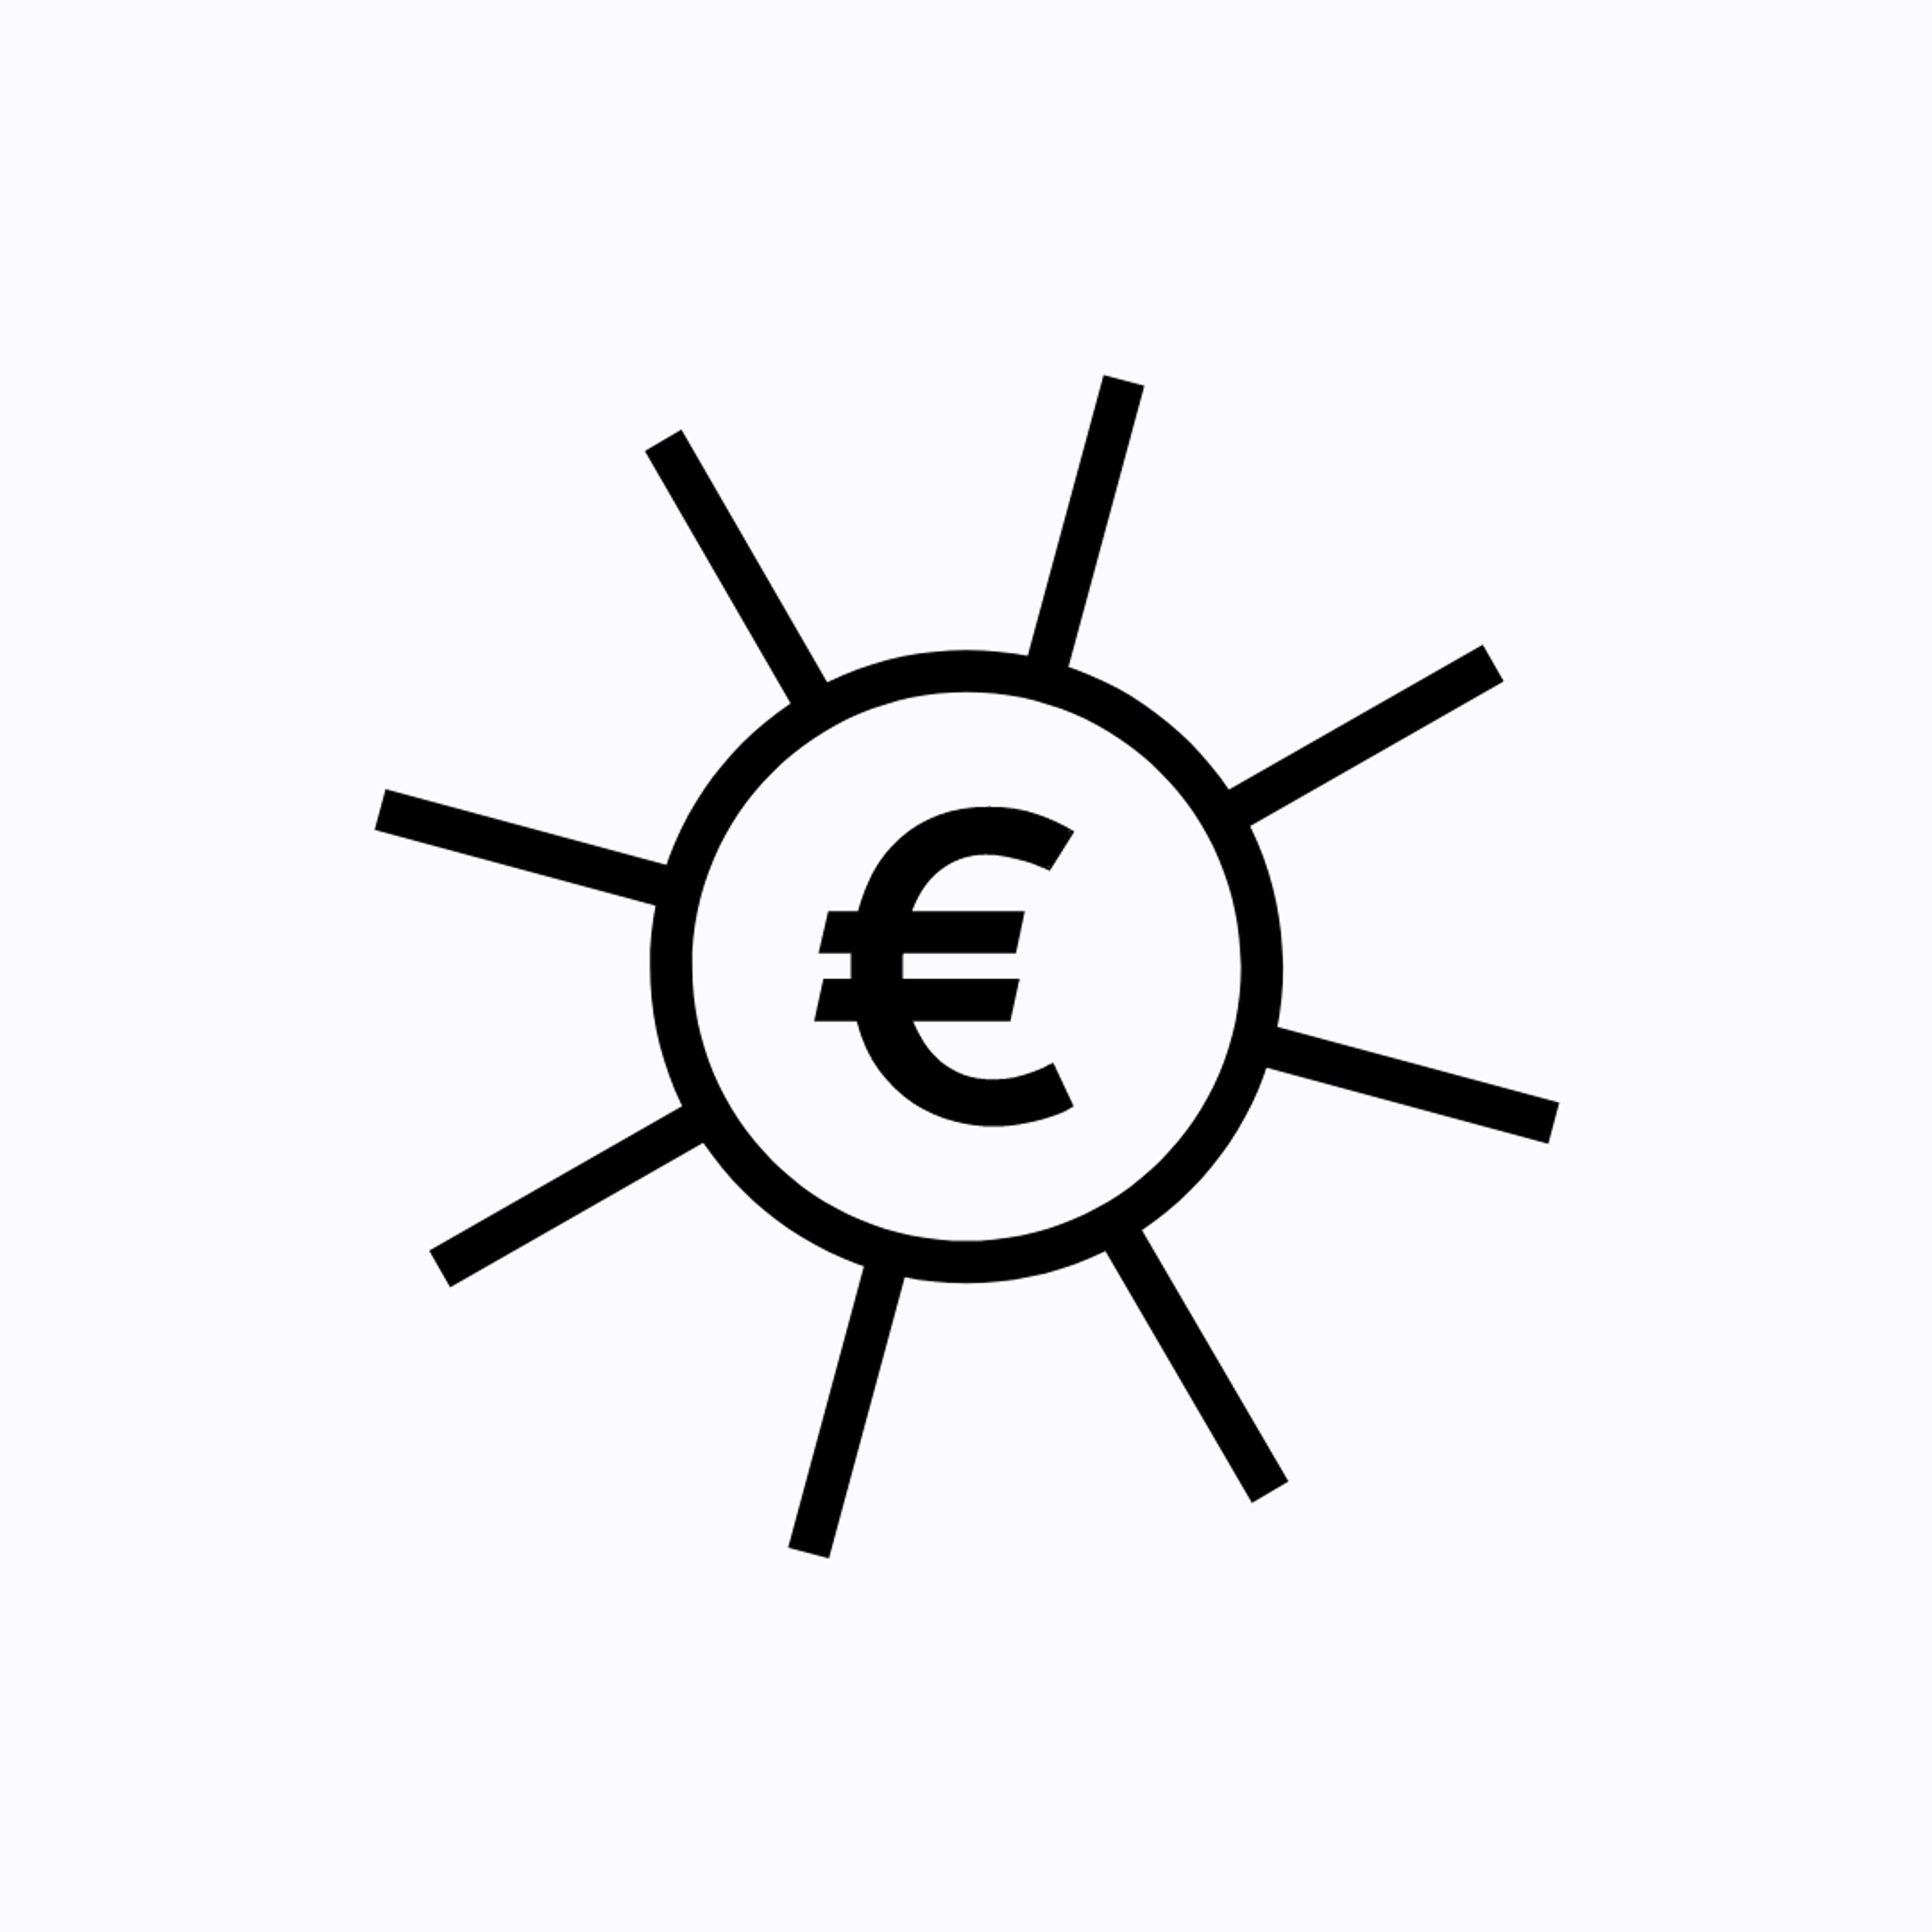 Eine Sonne mit Eurozeichen